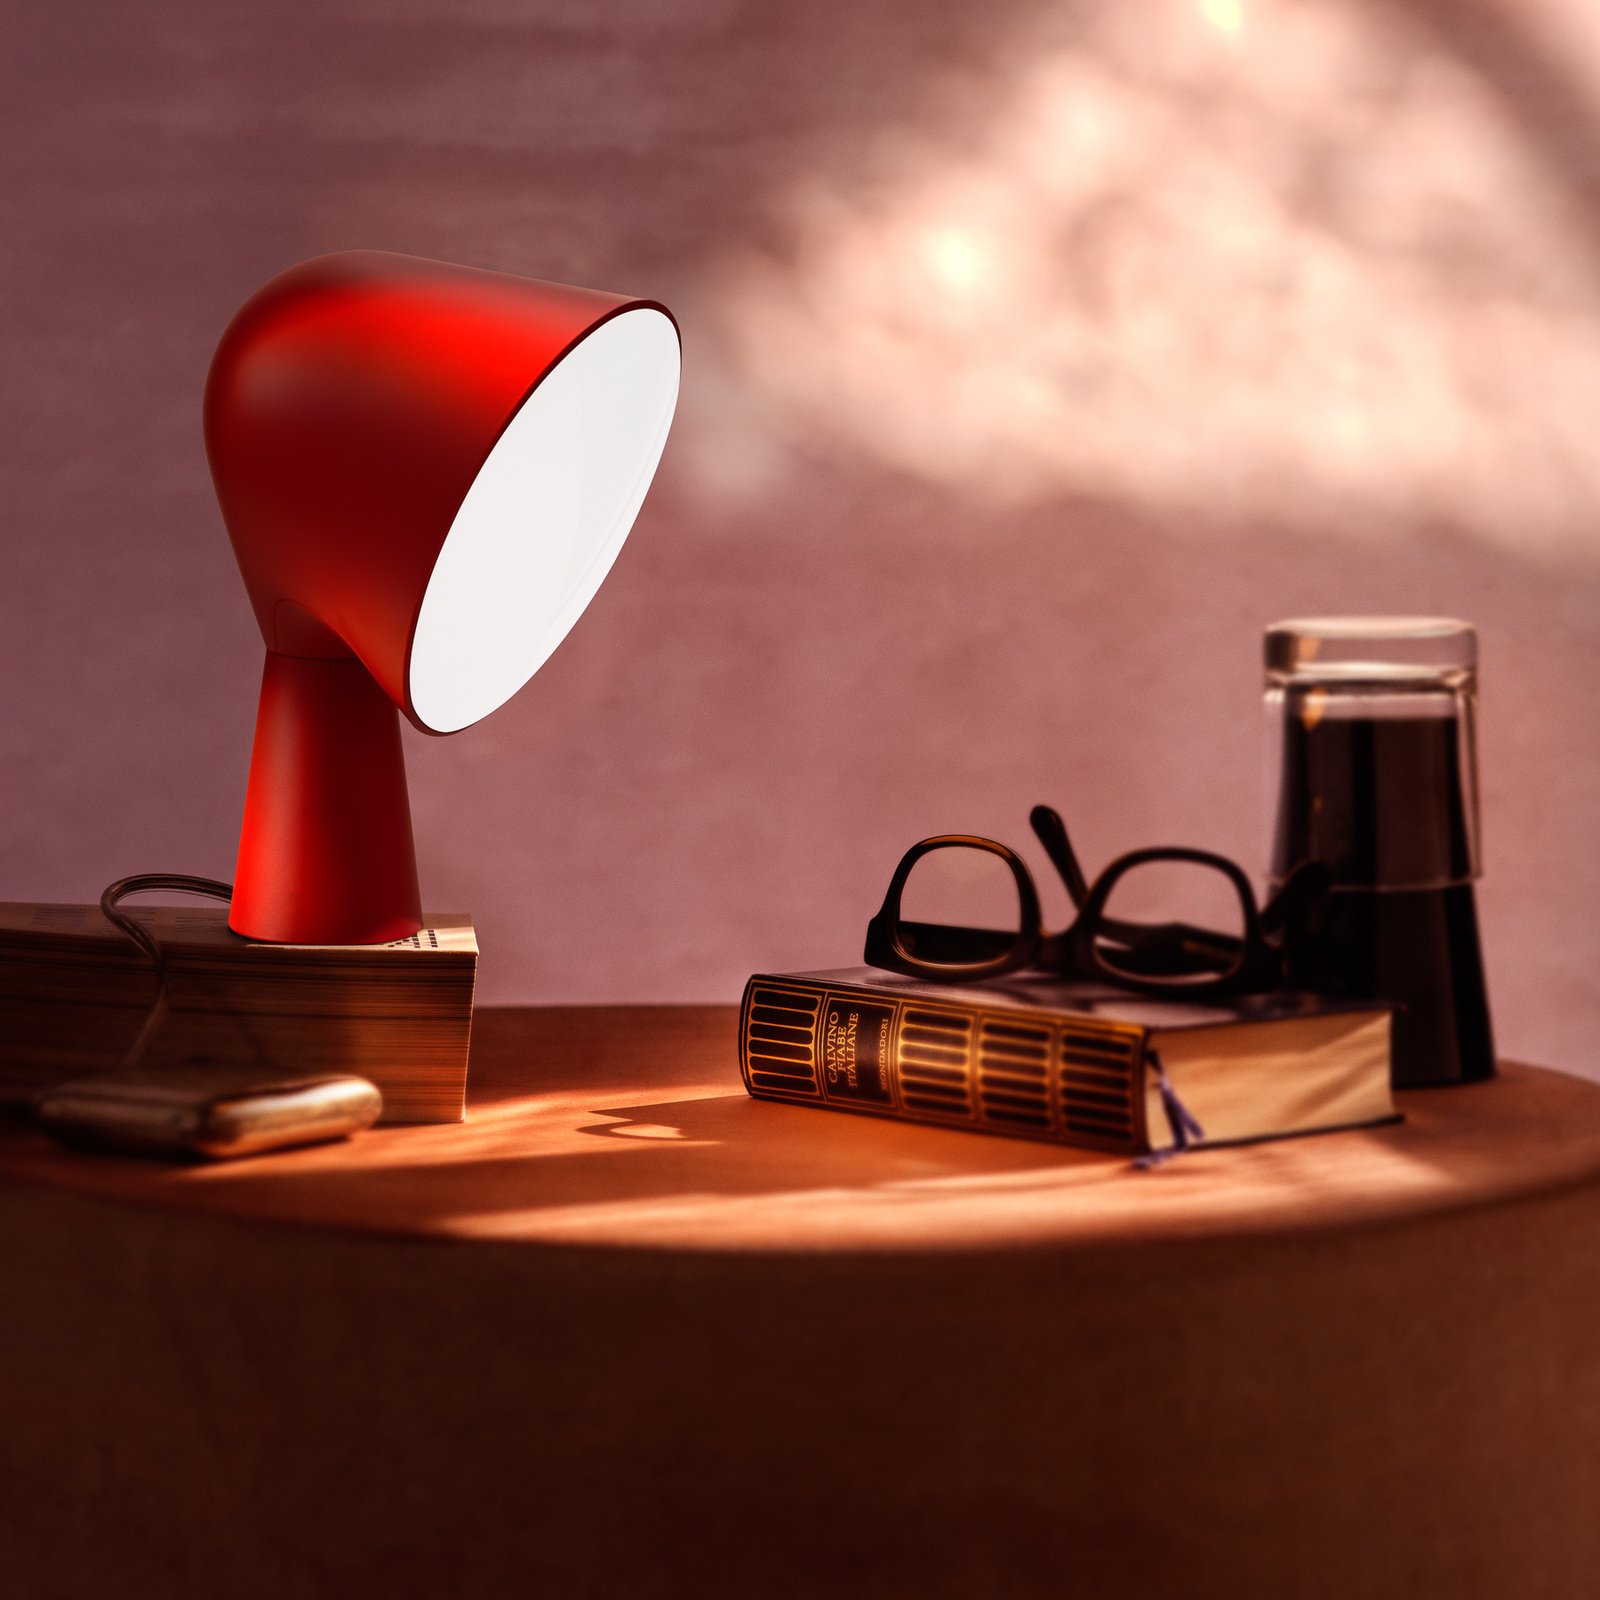 Foscarini Binic lampe à poser de designer, rouge